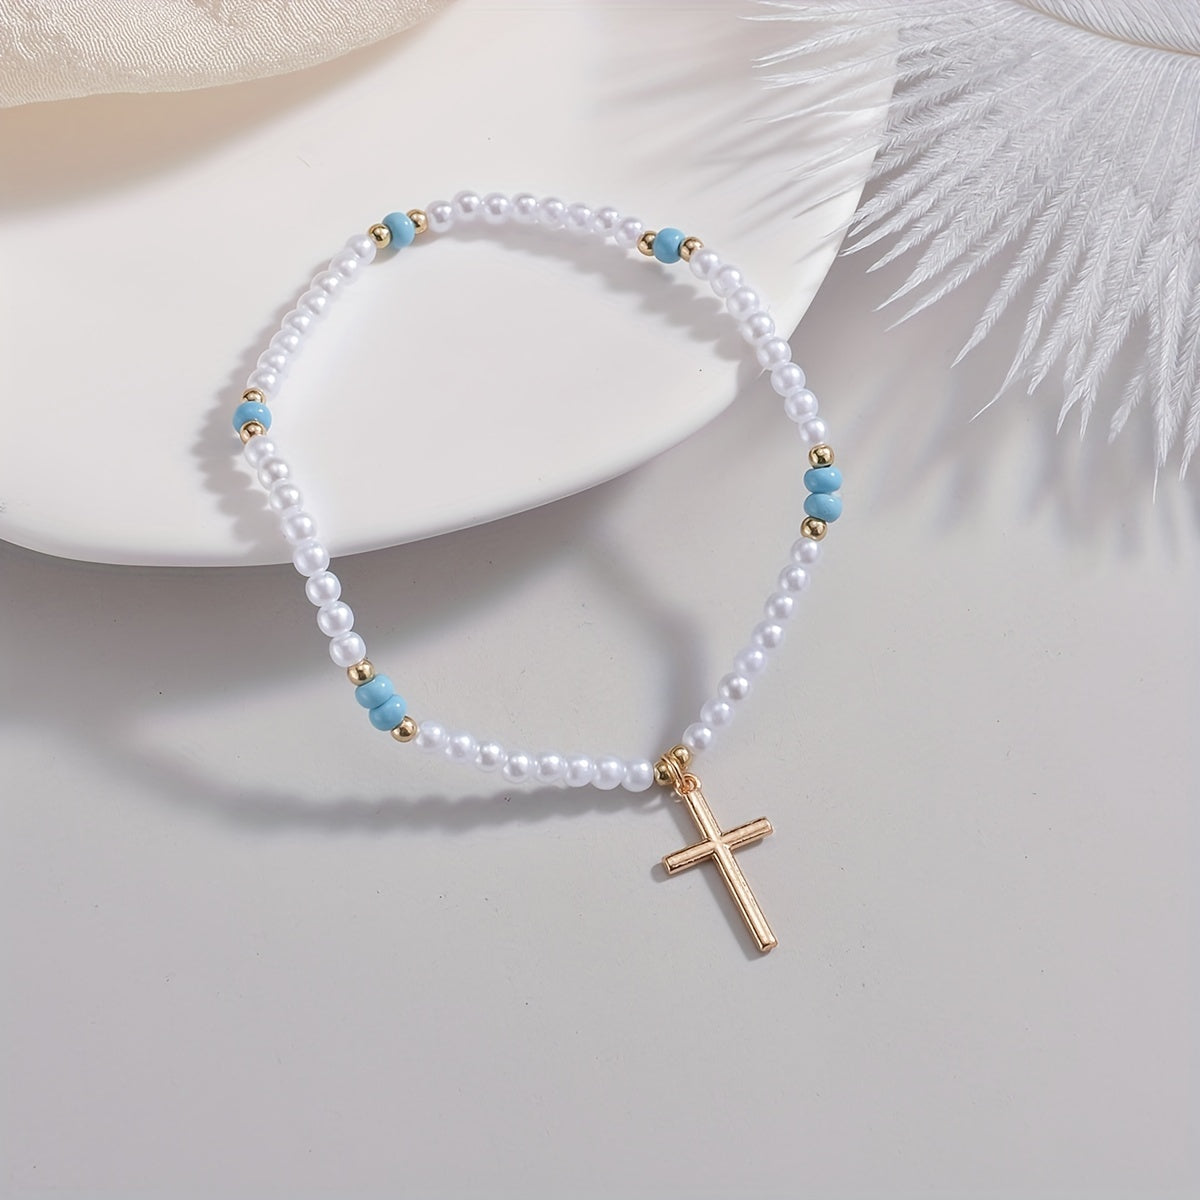 Cross Shape Pendant Beaded Anklet With Mini Faux Pearls Beads Elegant Ankle Bracelet For Women Girls